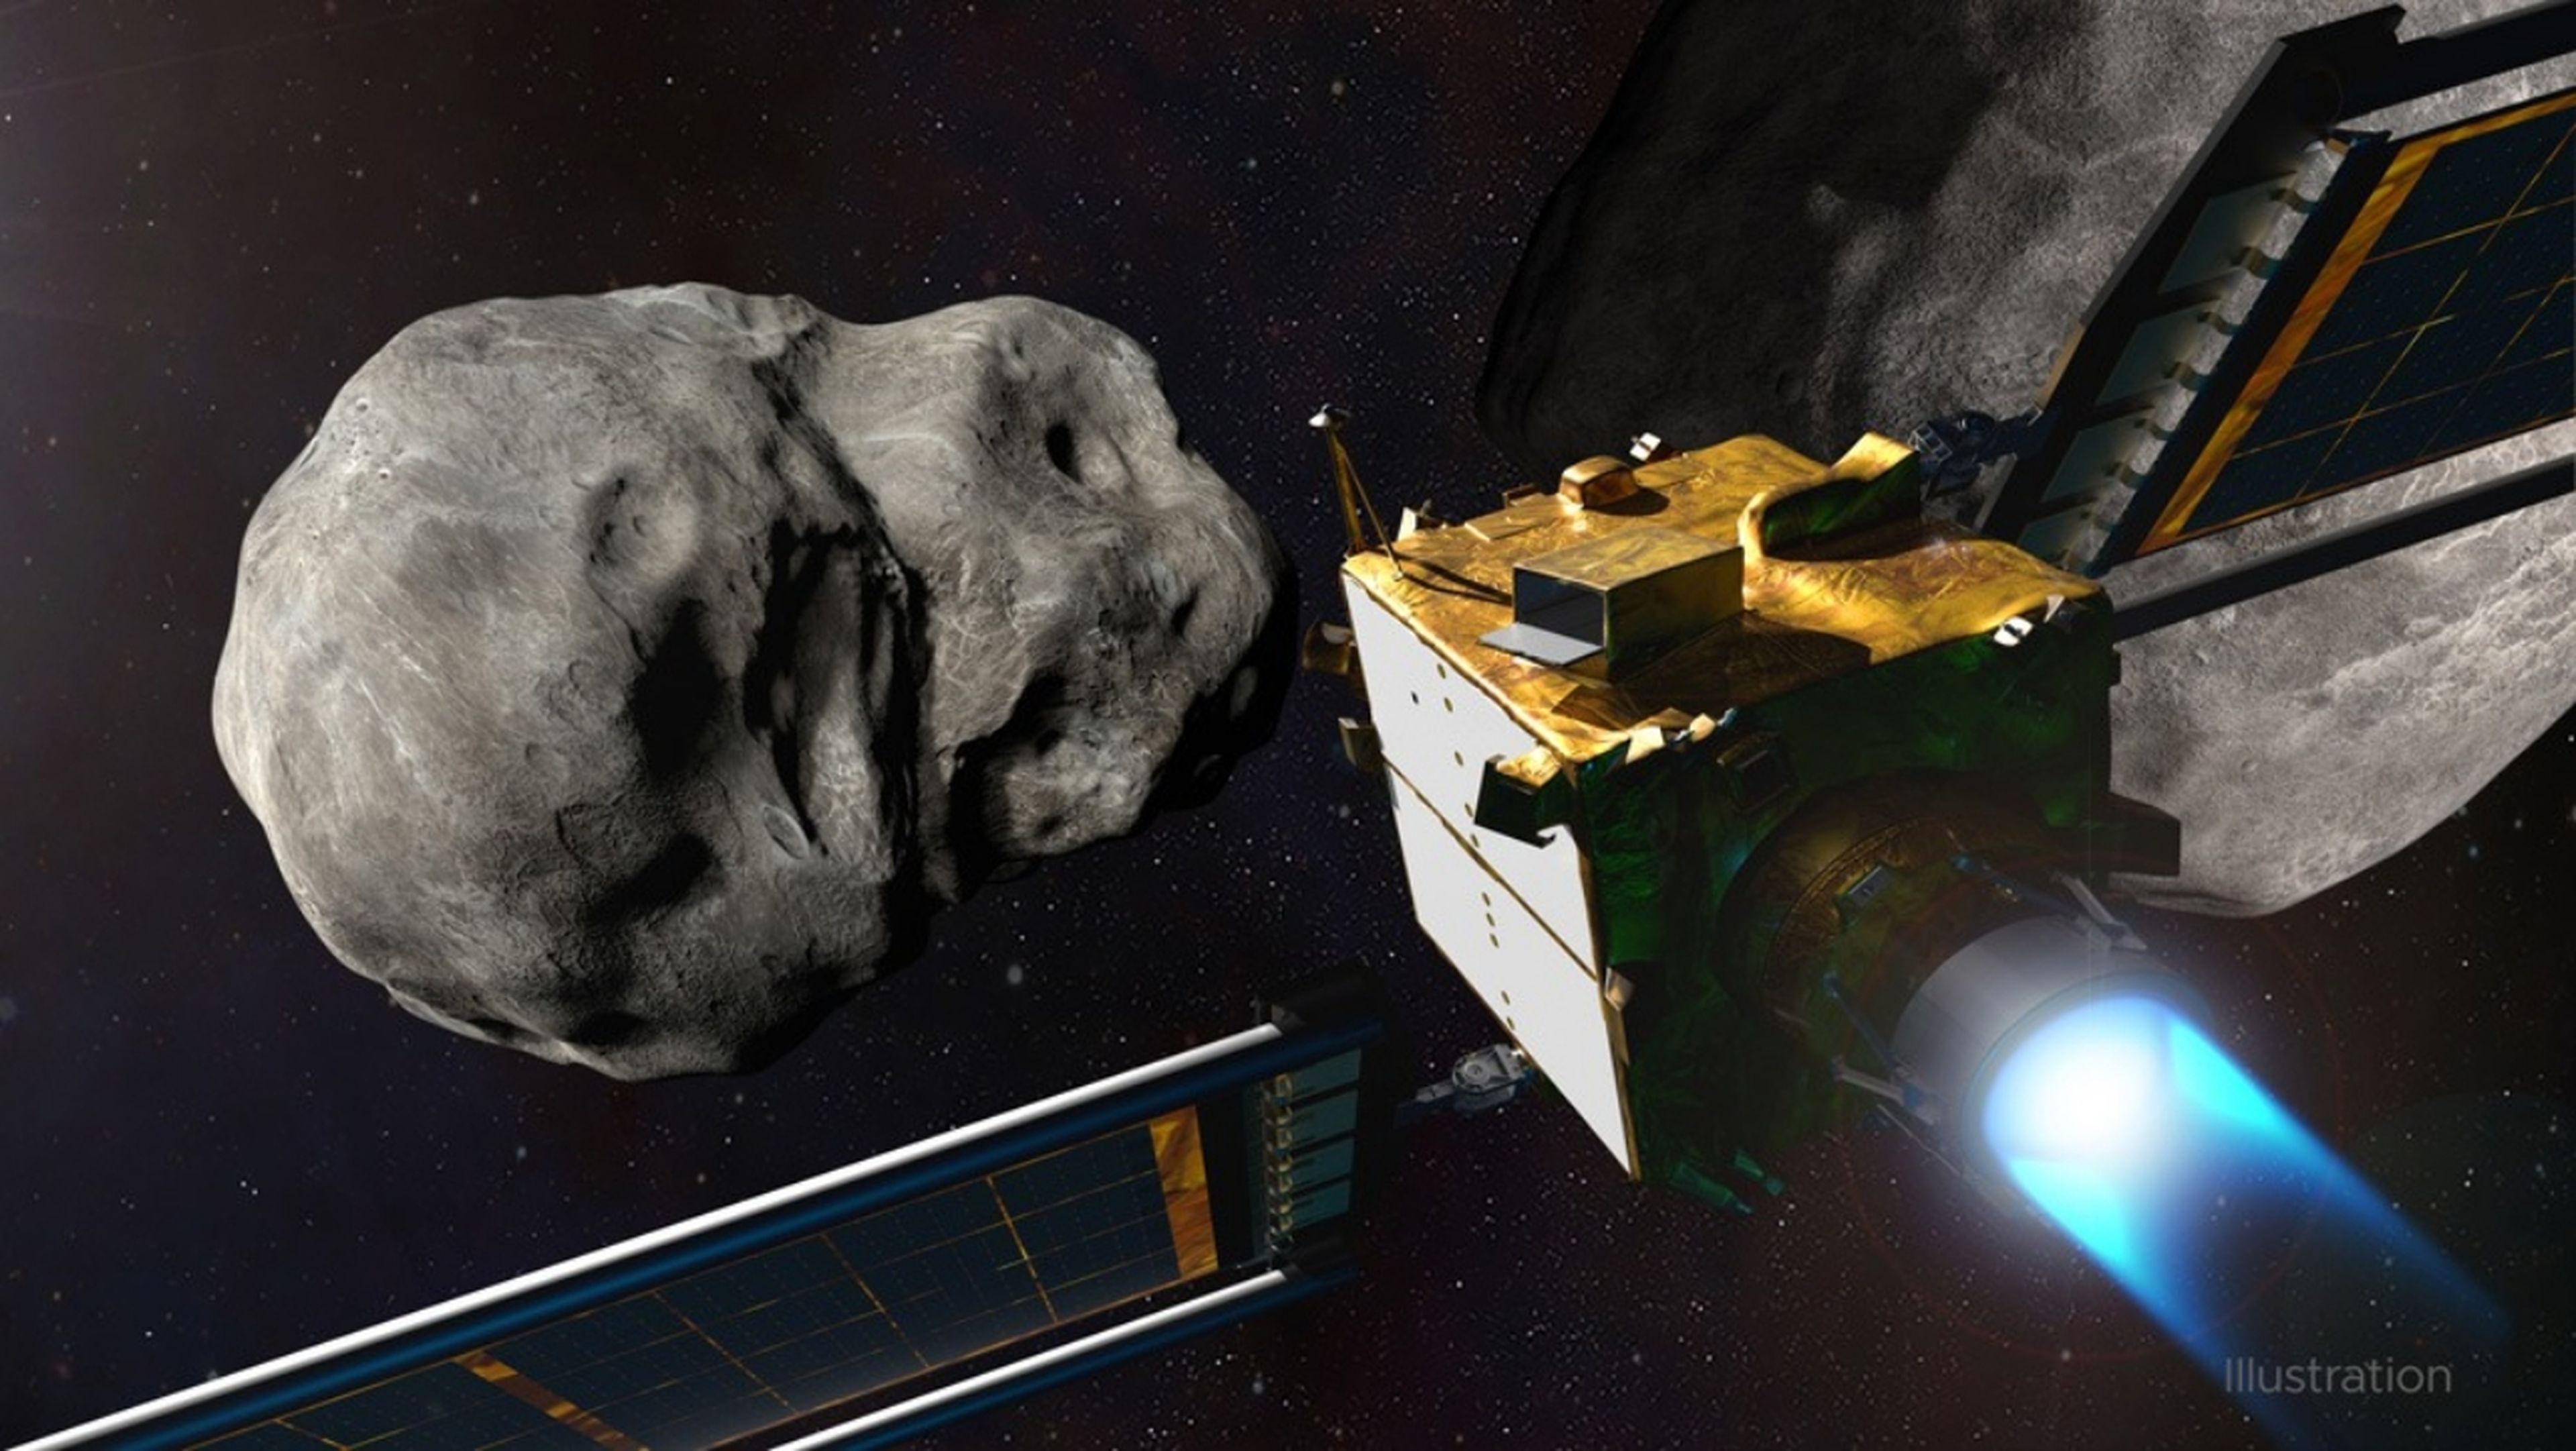 ¡Armageddon! Cómo ver online el choque entre una nave de la NASA y un asteroide